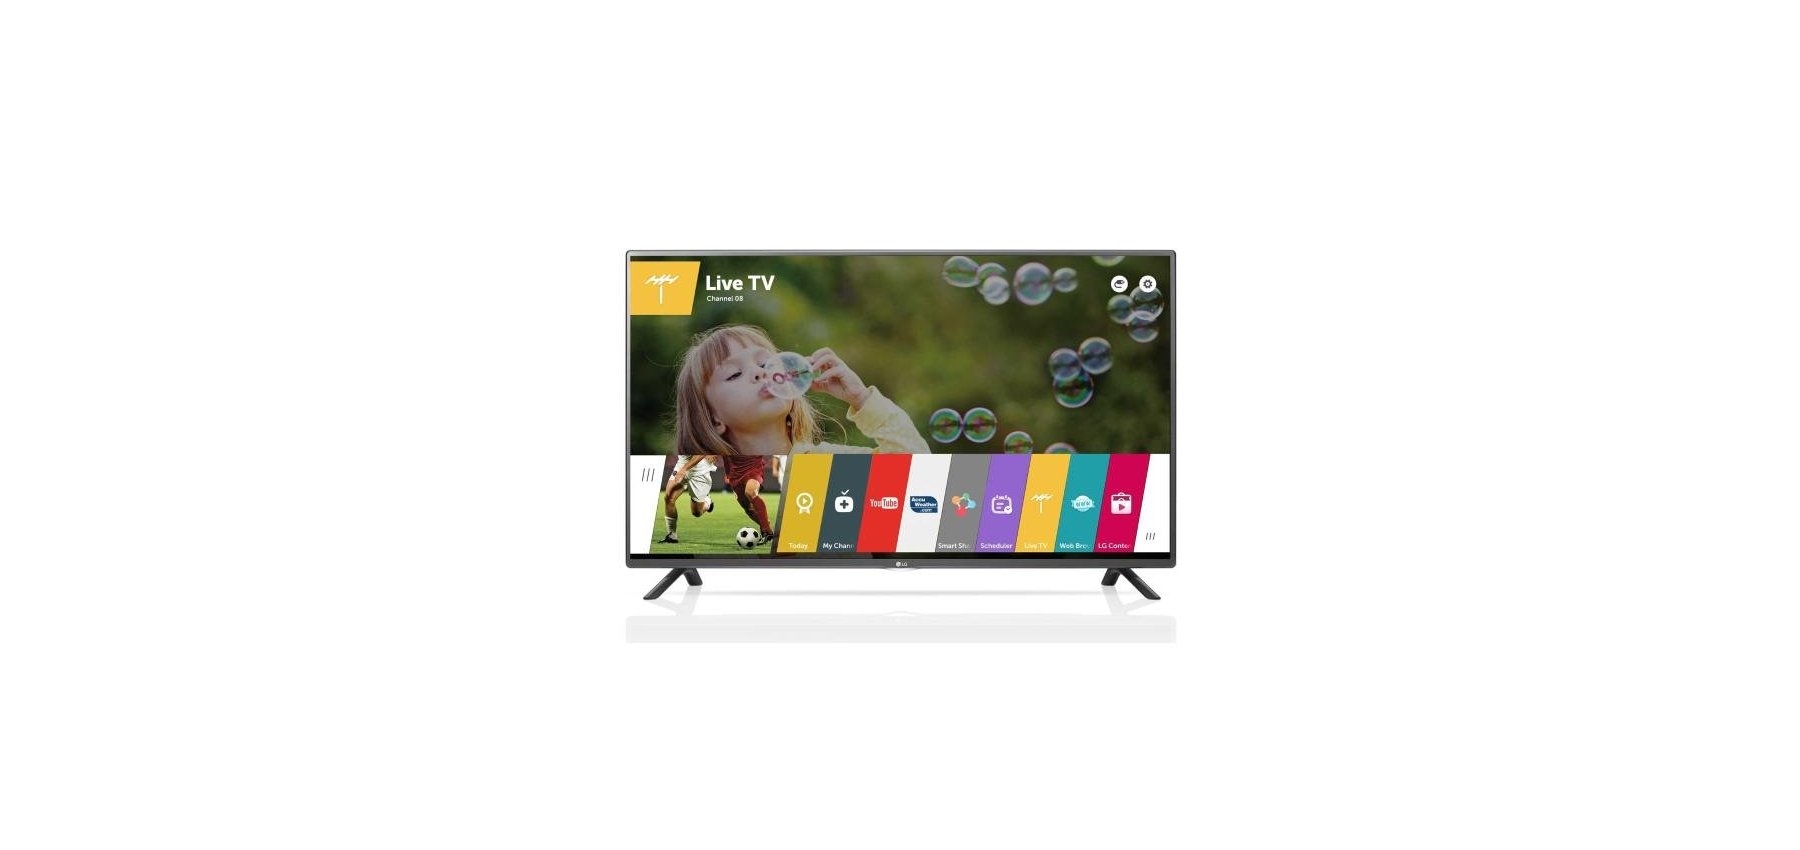 Telewizor LG 55LF592V/55cali/SMART TV/Full HD 1920 x 1080